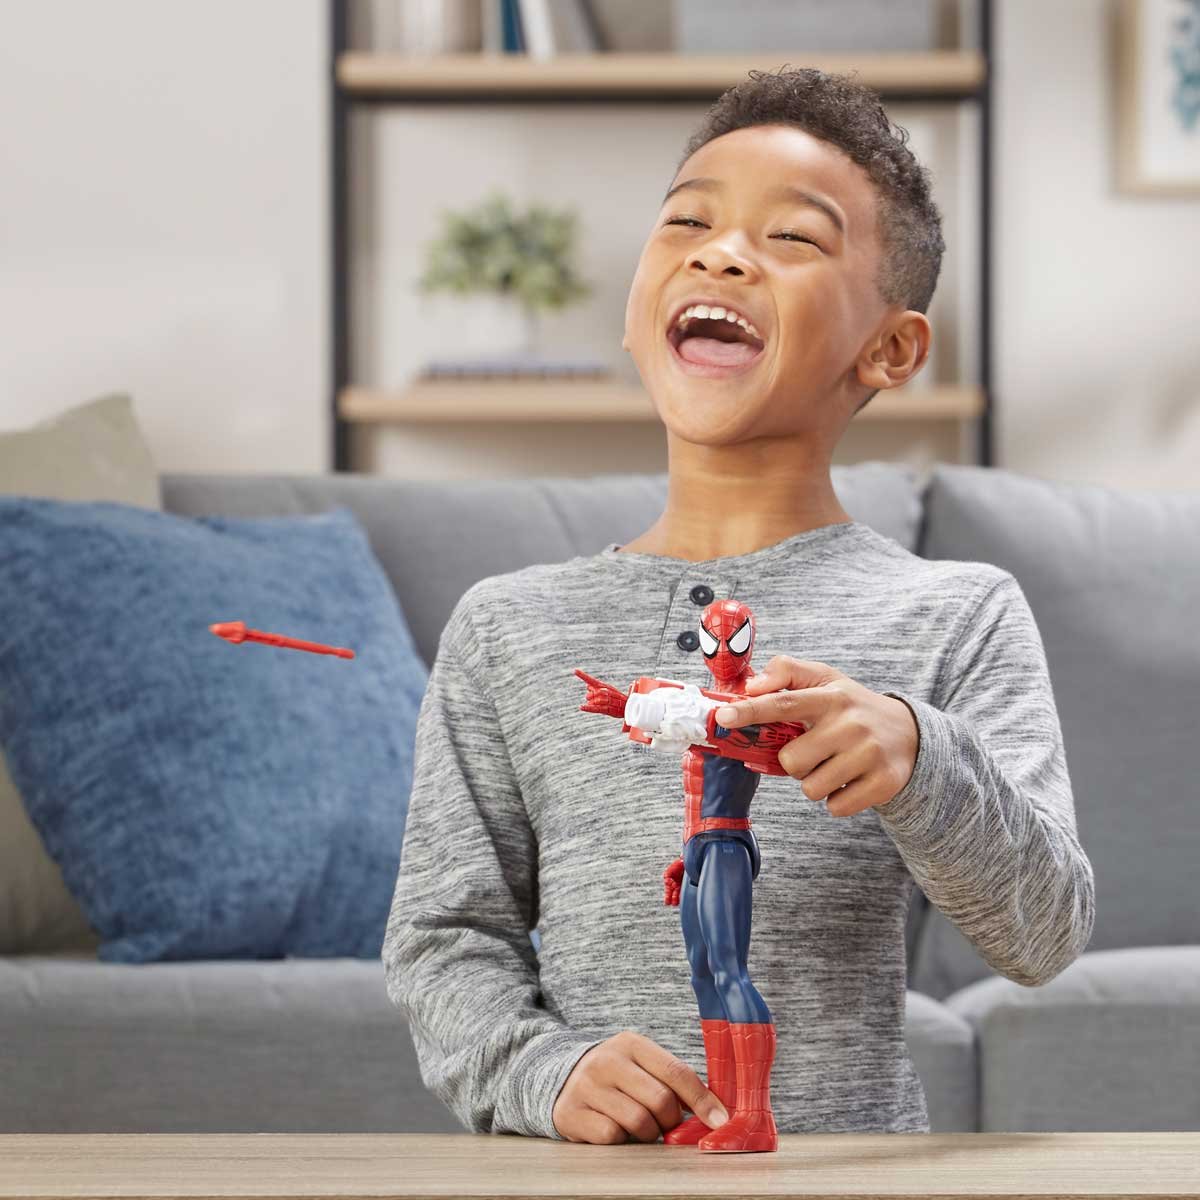 Figura Titan Hero Power Fx Spiderman con Accesorio Hasbro